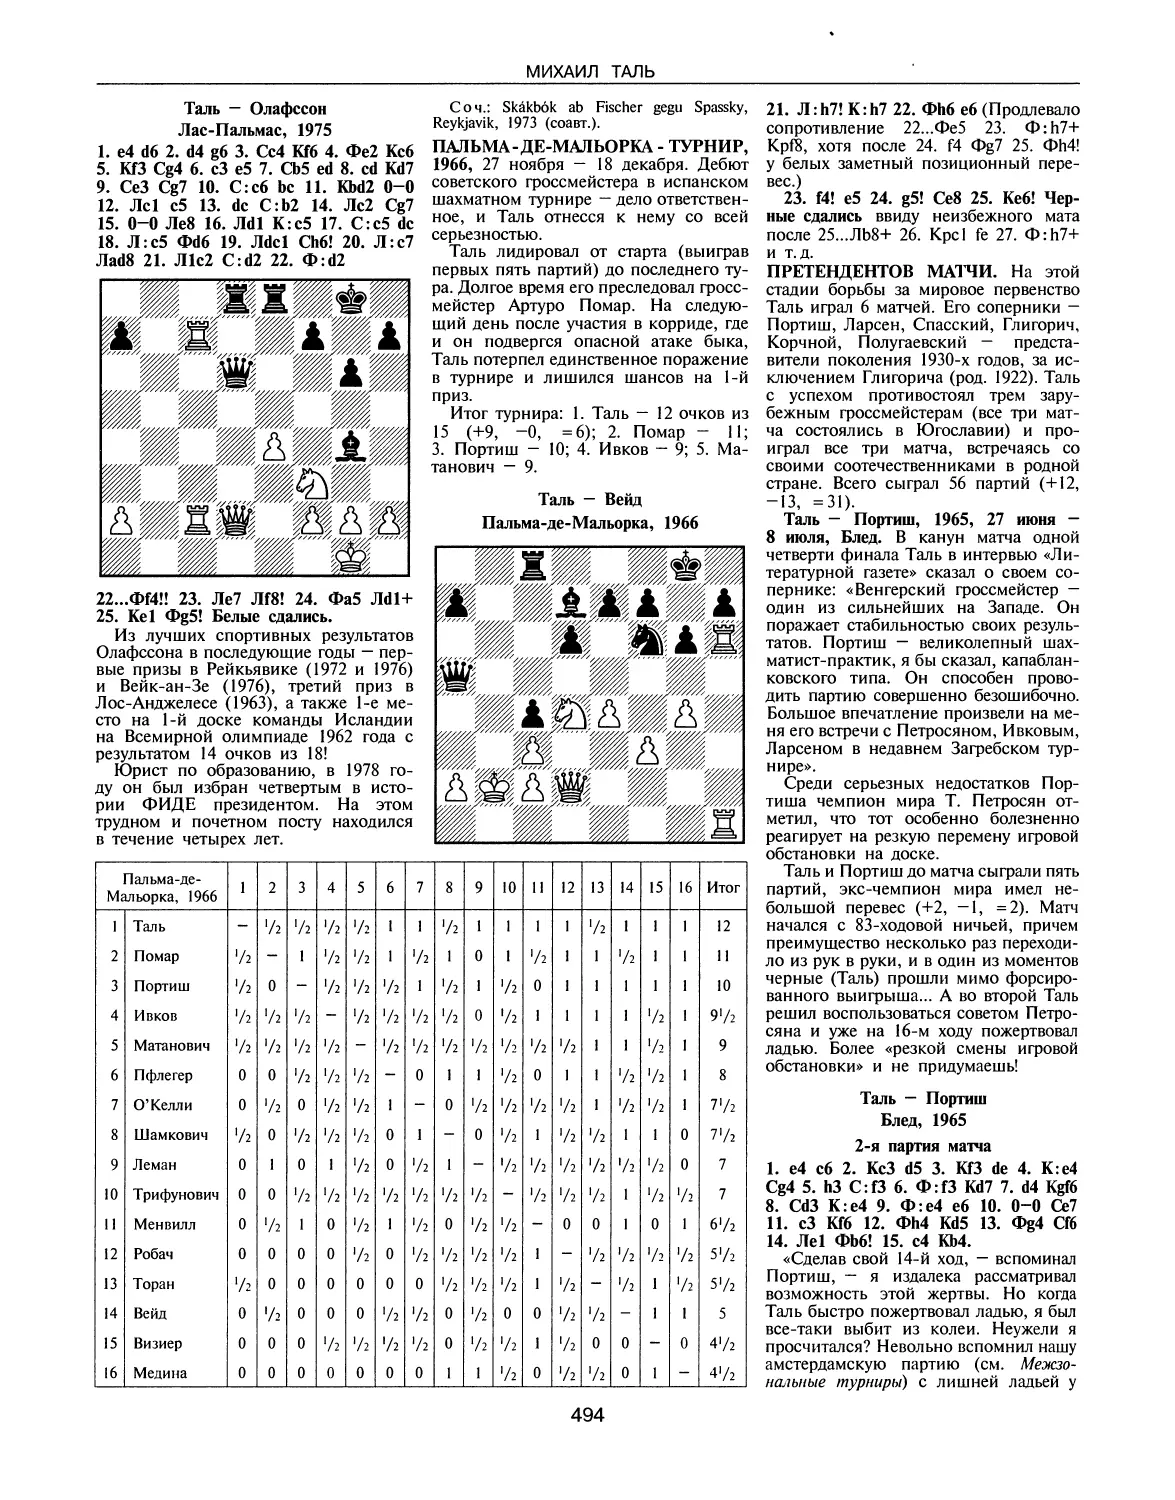 Пальма-де-Мальорка-турнир, 1966
Претендентов матчи